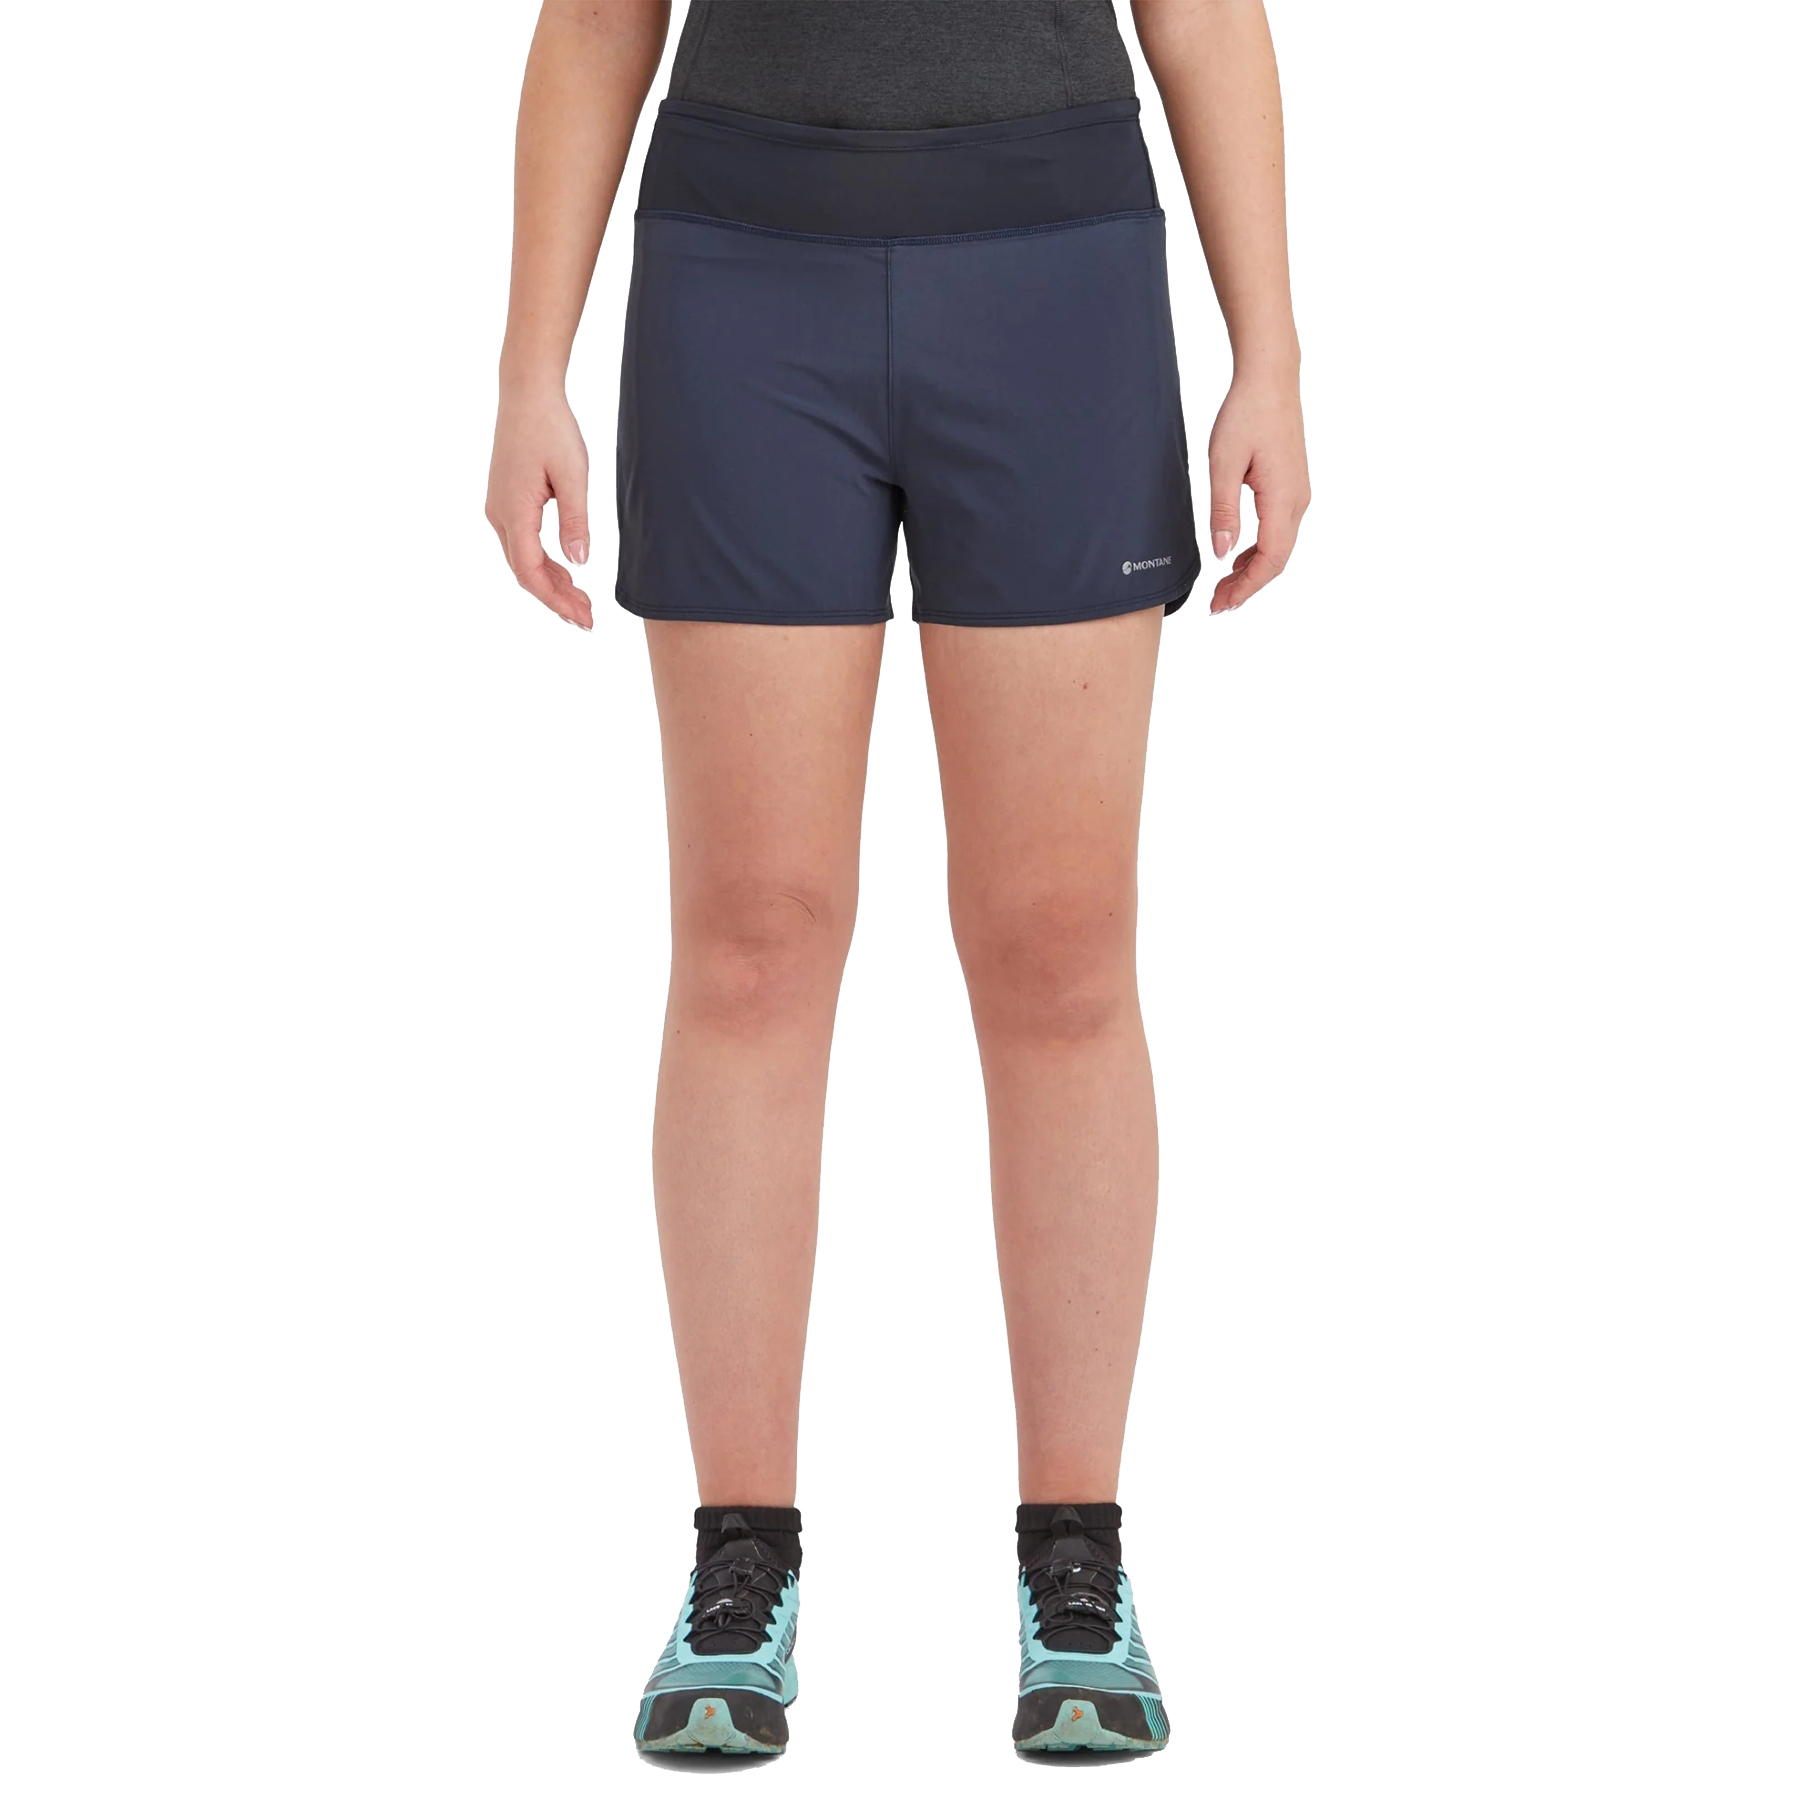 Produktbild von Montane Slipstream Twin Skin Damen Trail Running Shorts - eclipse blue